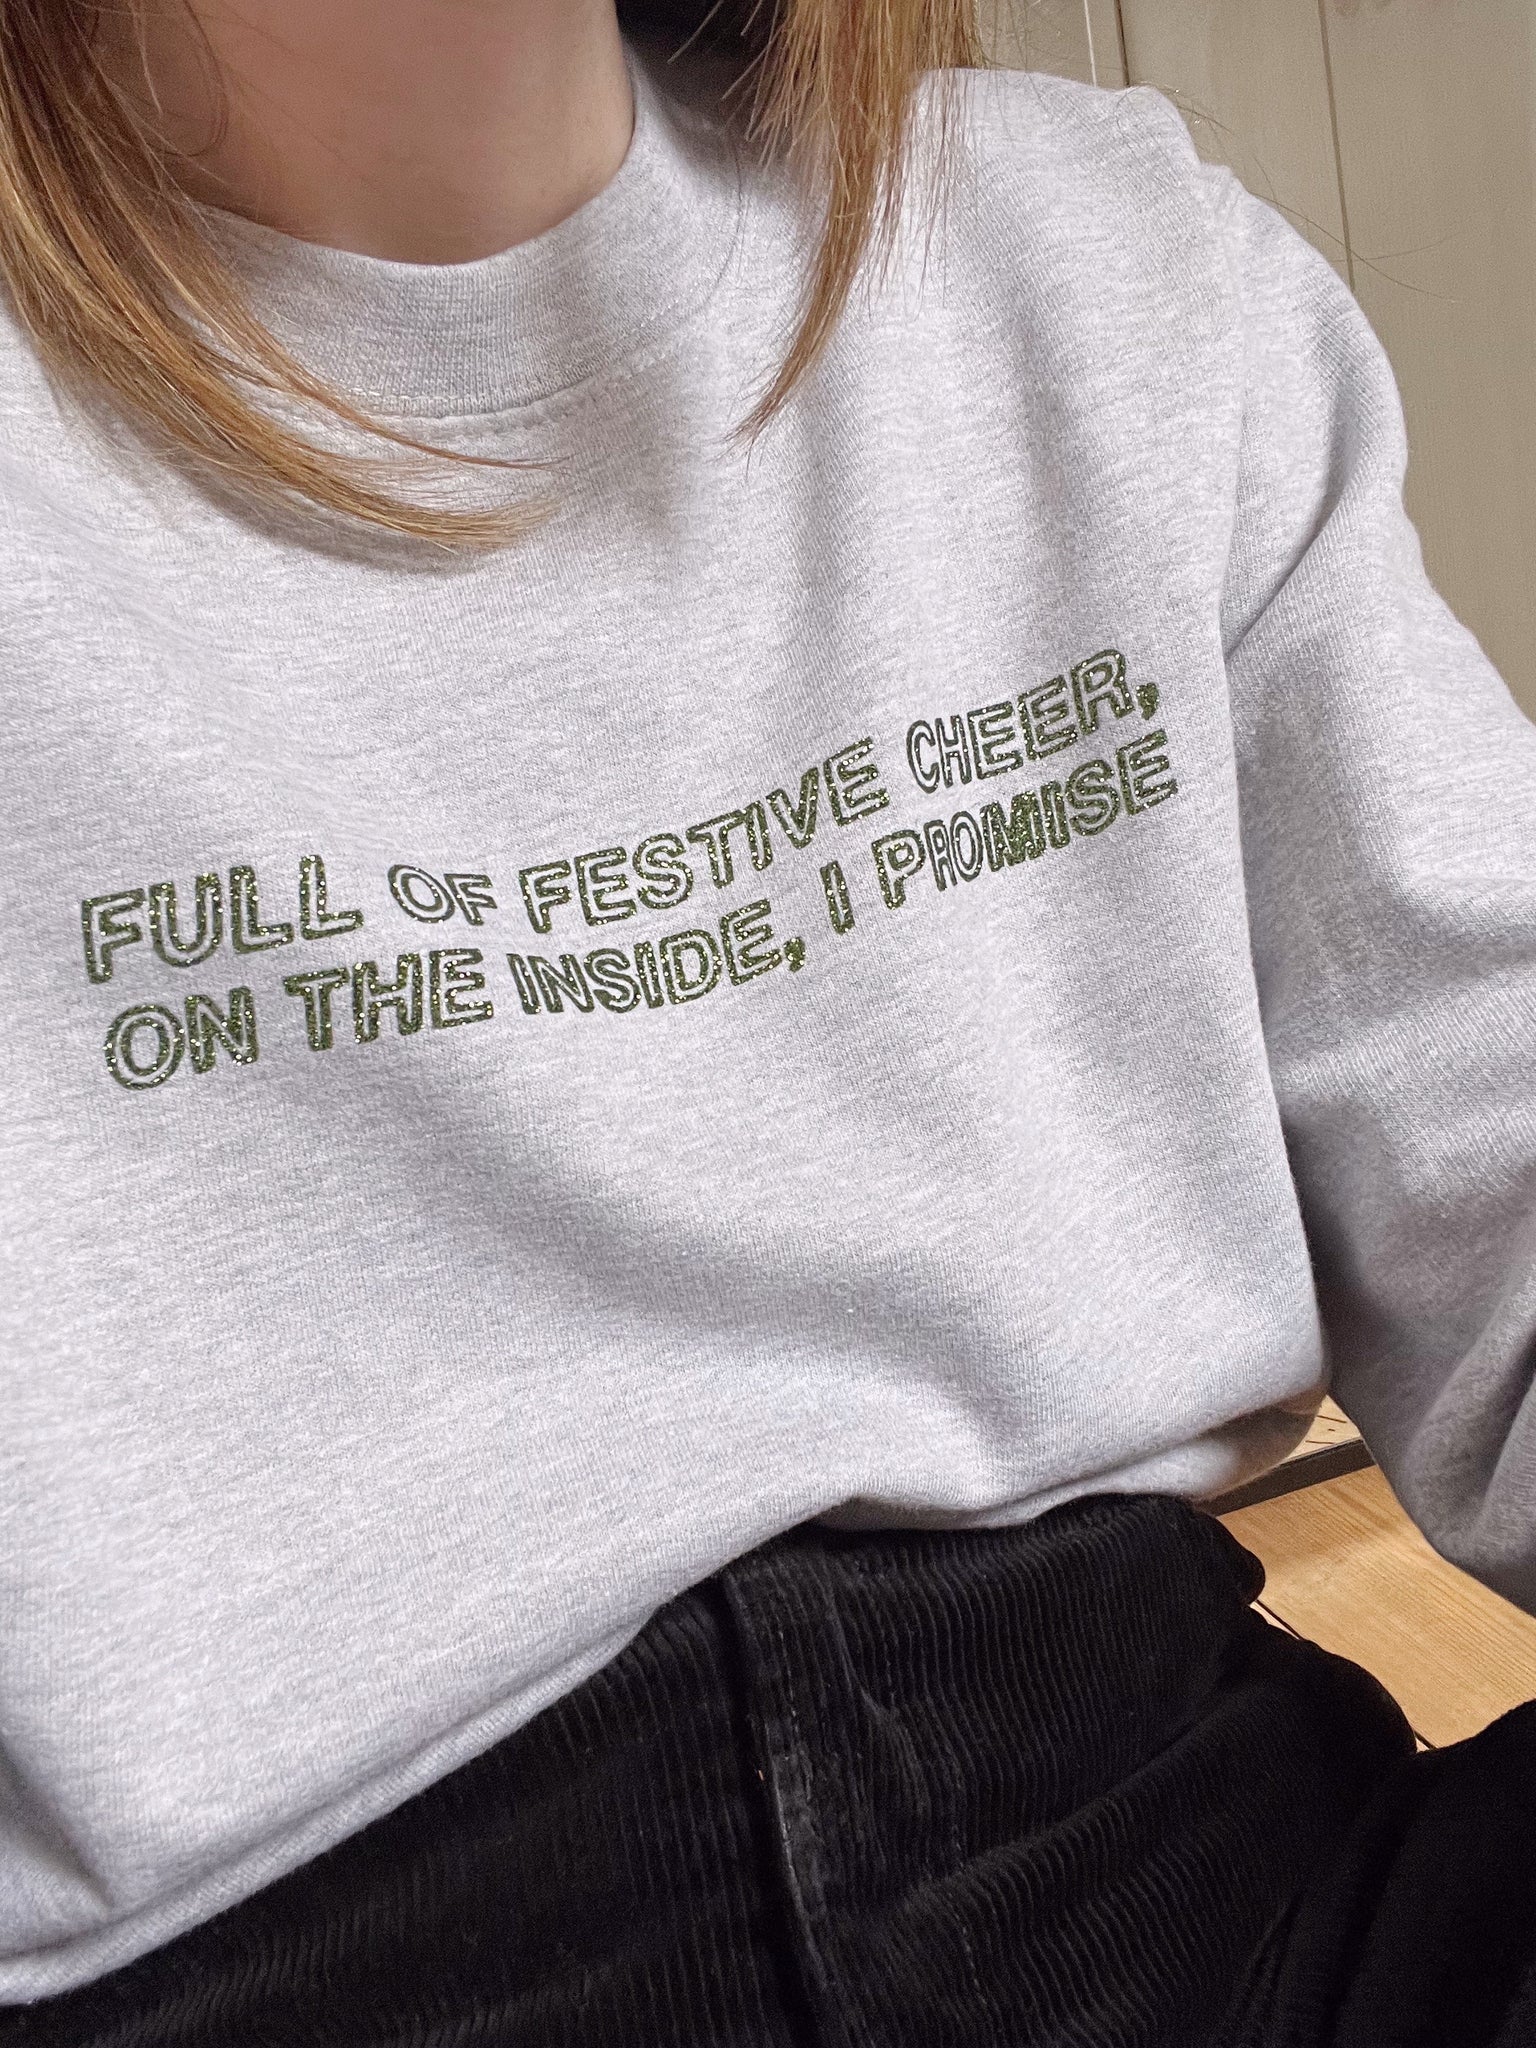 Full of Festive Cheer, on the Inside, I Promise- Unisex Fit Sweater